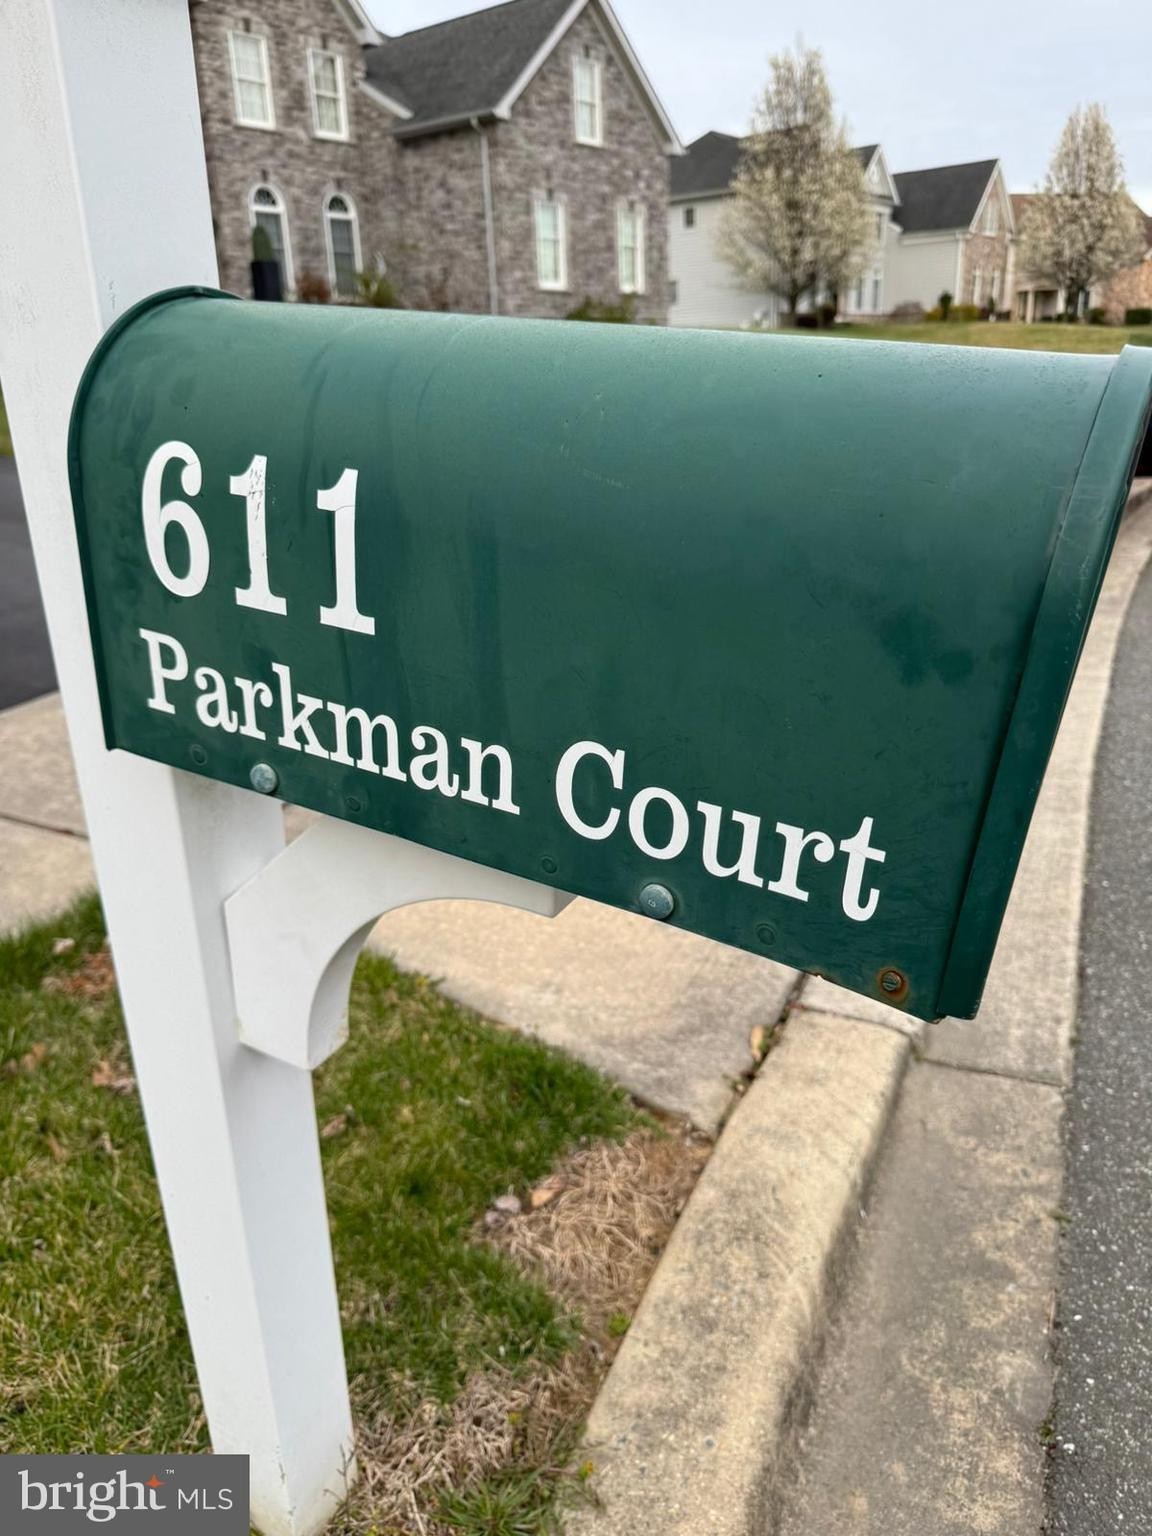 42. 611 Parkman Court